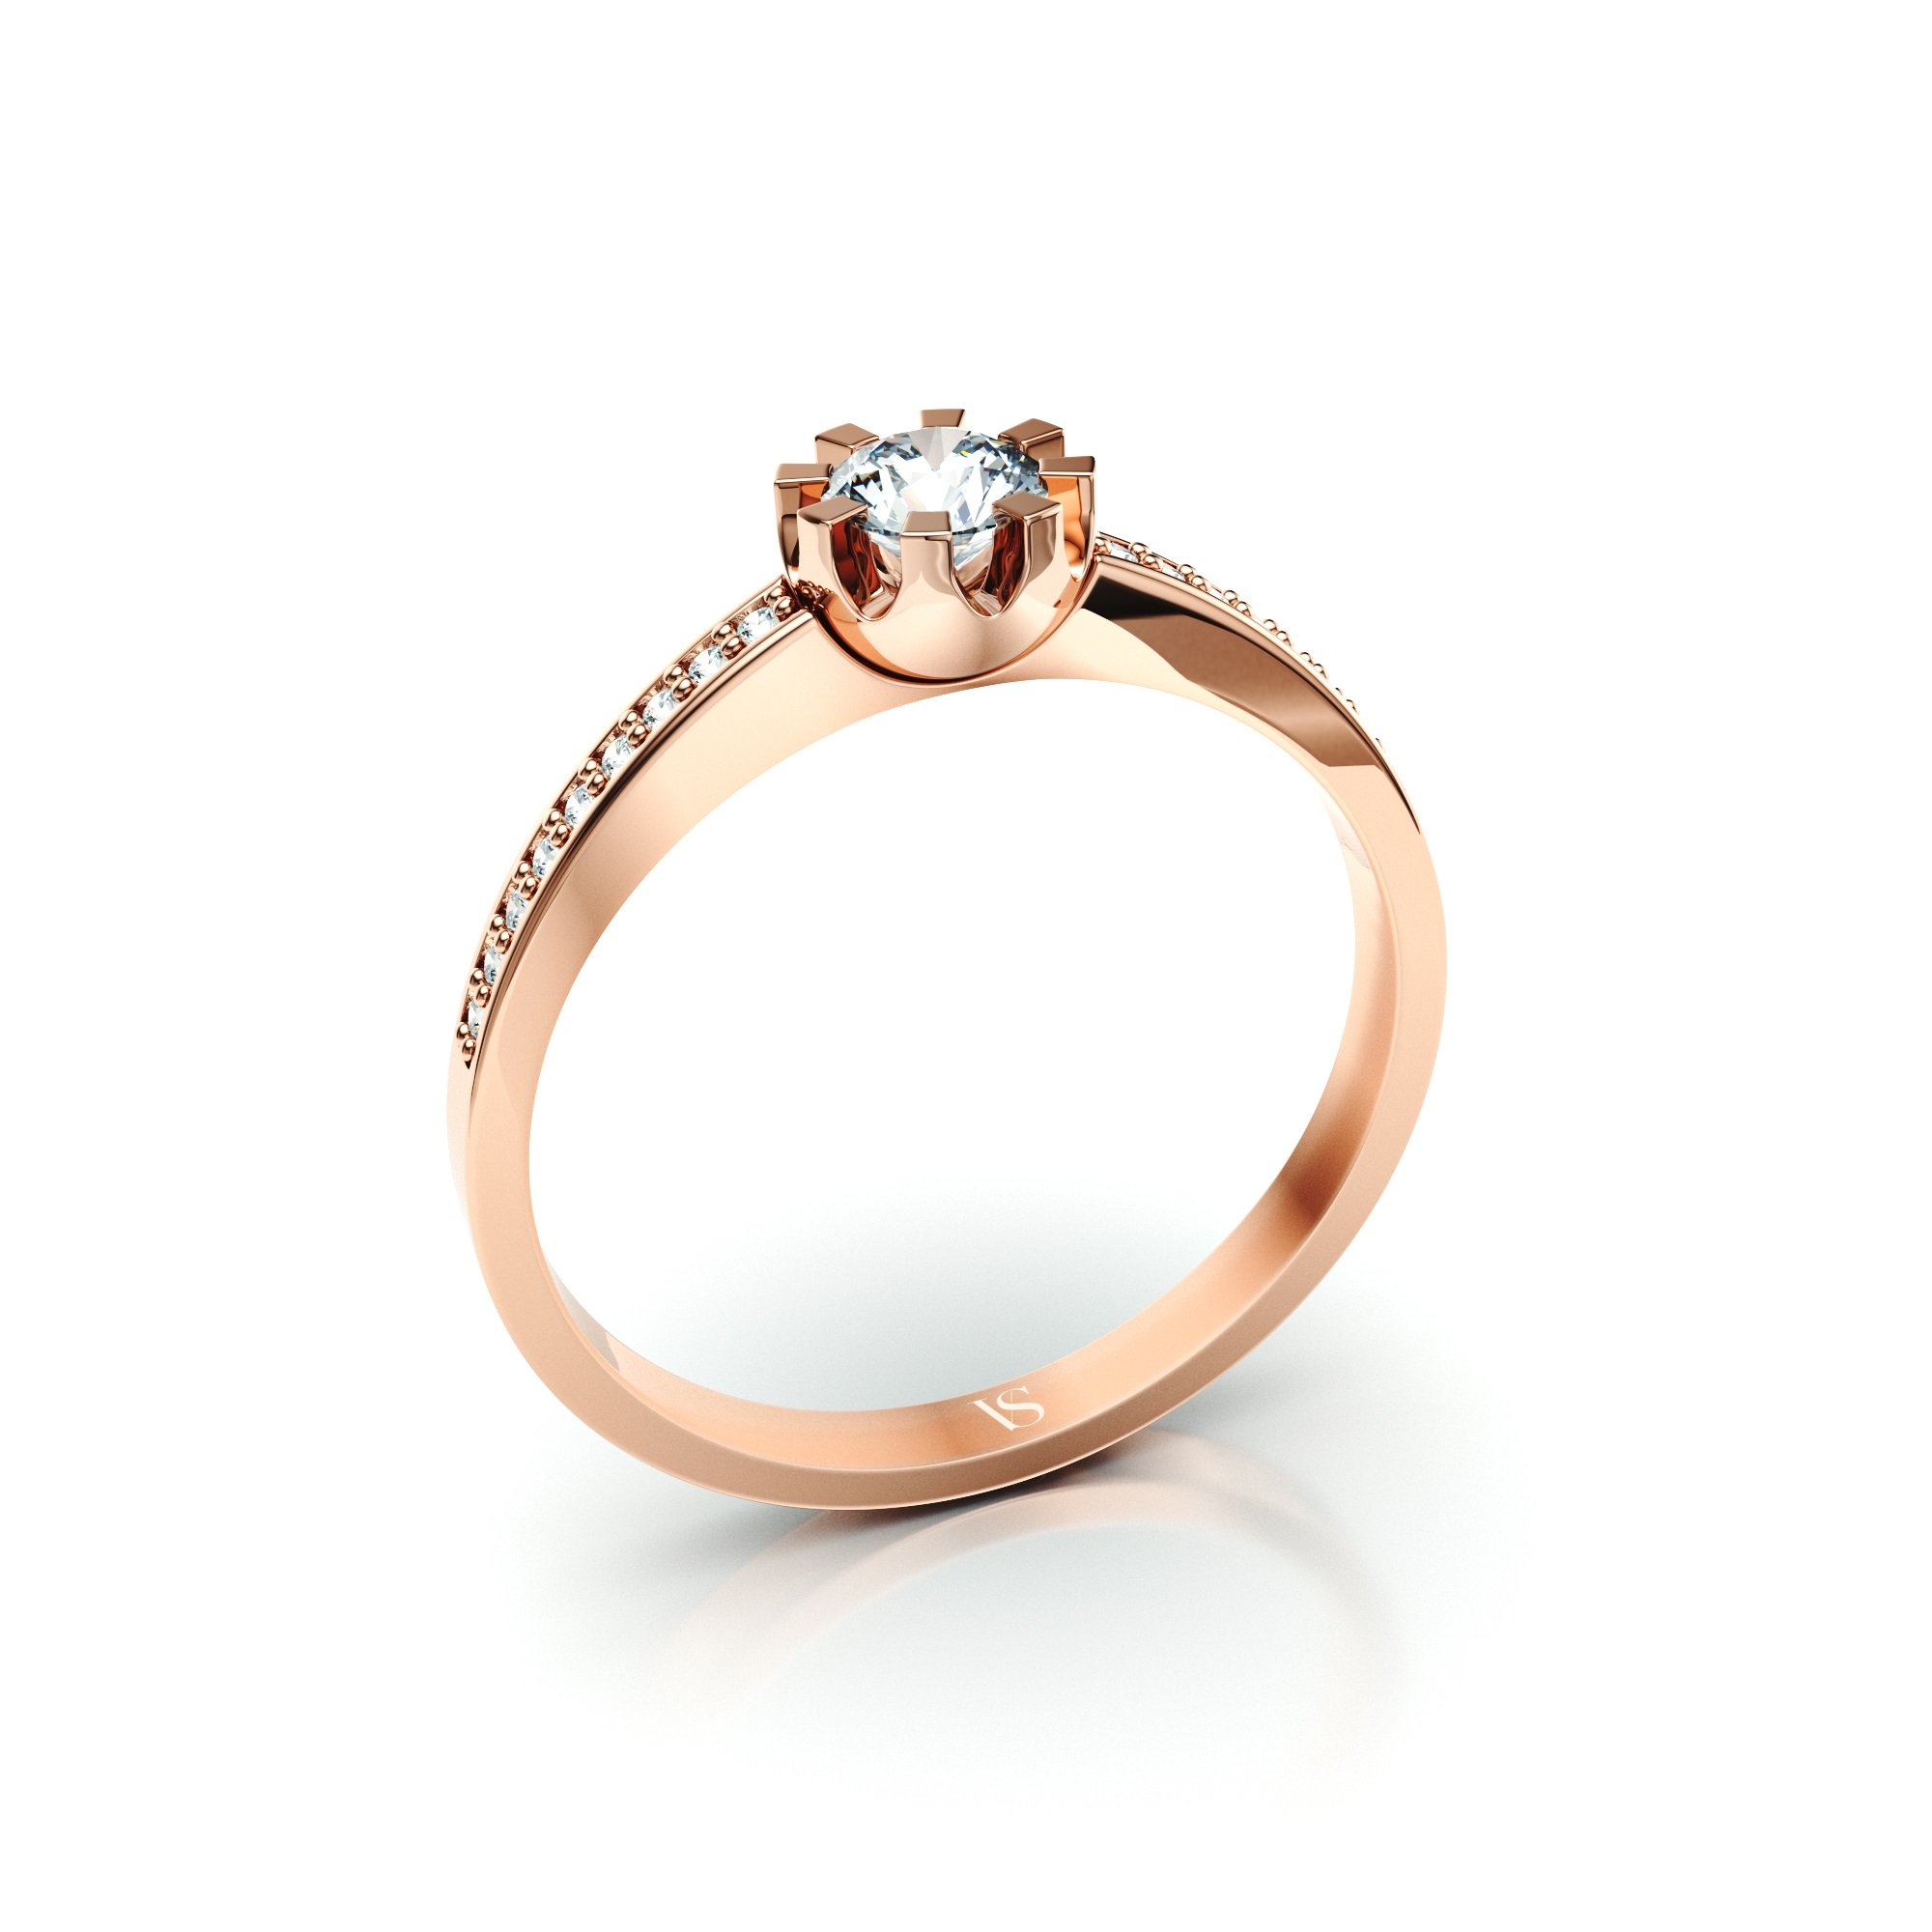 Zásnubní prsten VS120 – růžové zlato